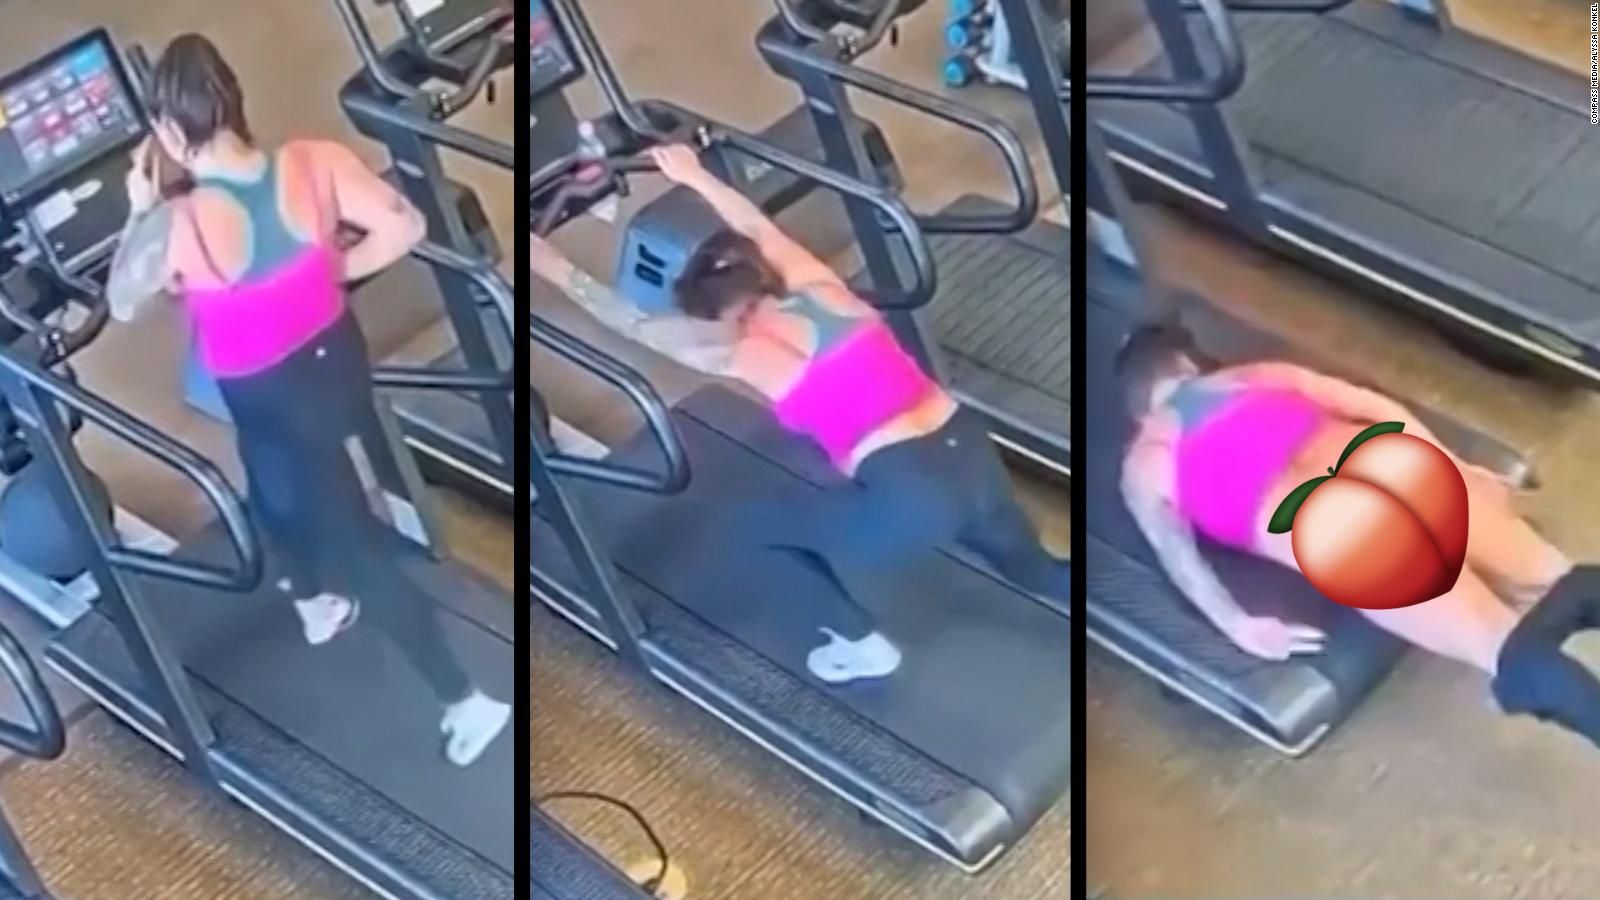 Cuántas personas vieron mi trasero?: accidente de una mujer en una máquina  de correr queda grabado en video